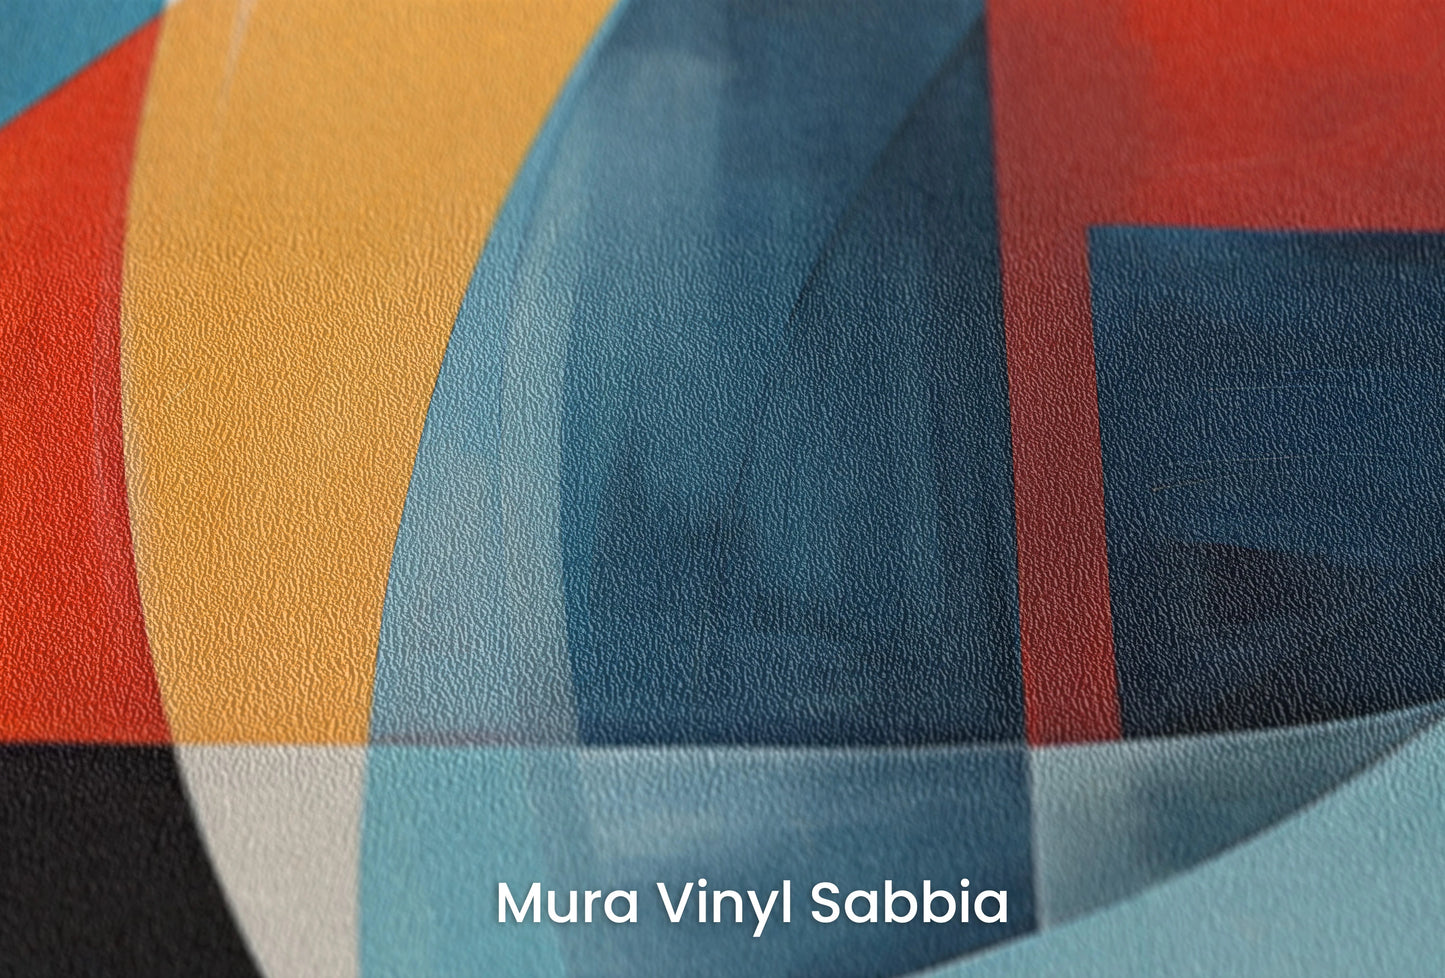 Zbliżenie na artystyczną fototapetę o nazwie Abstract Swirl na podłożu Mura Vinyl Sabbia struktura grubego ziarna piasku.